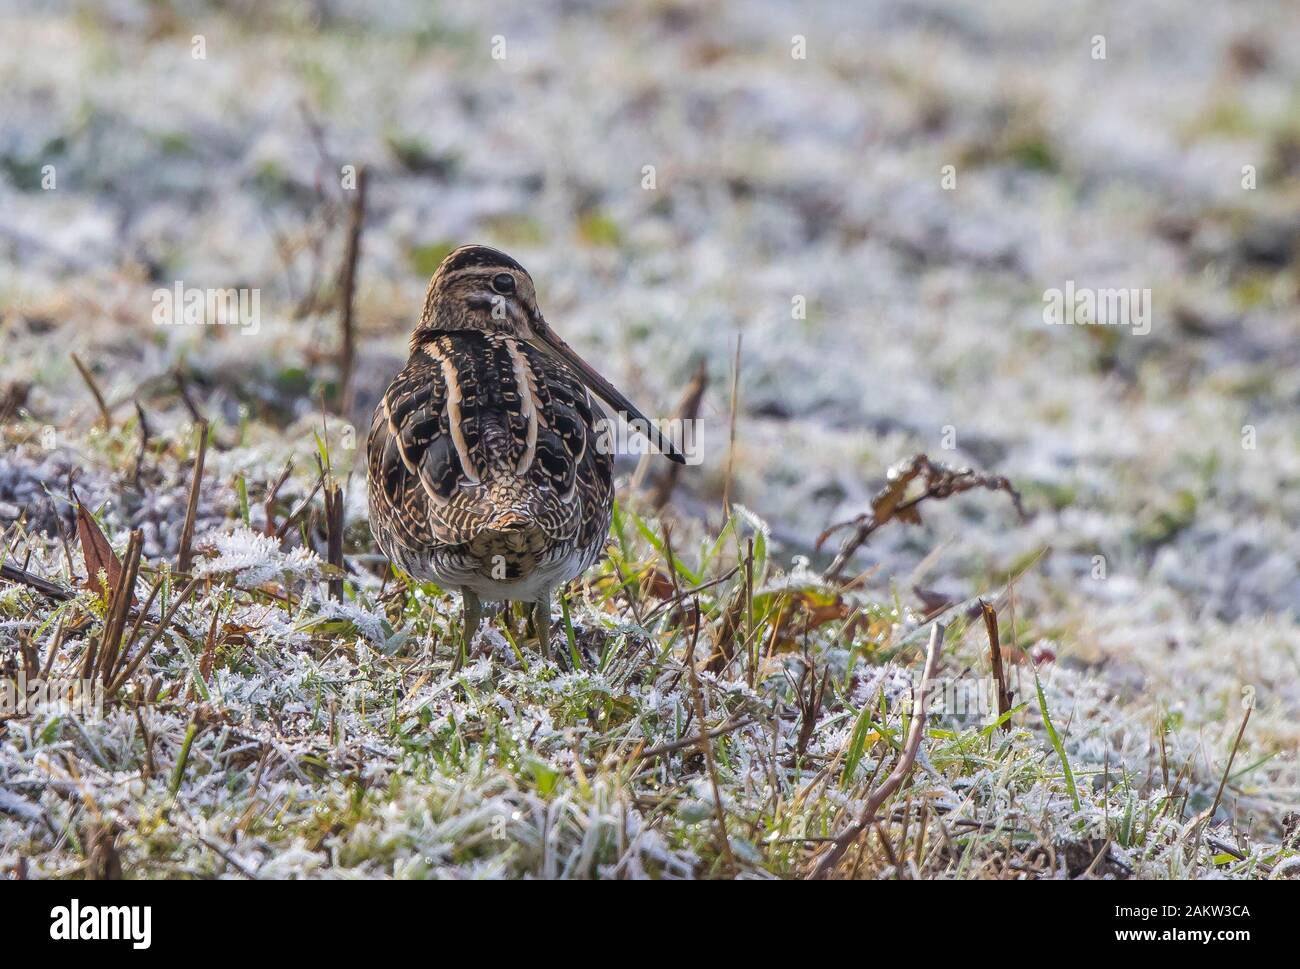 Ansicht von hinten in der Nähe von Großbritannien snipe Vogel (Gallinago gallinago) isoliert im Winter Frost, stehend auf gefrorenem Boden. Hinter Snipe; Lange snipe Schnabel. Stockfoto